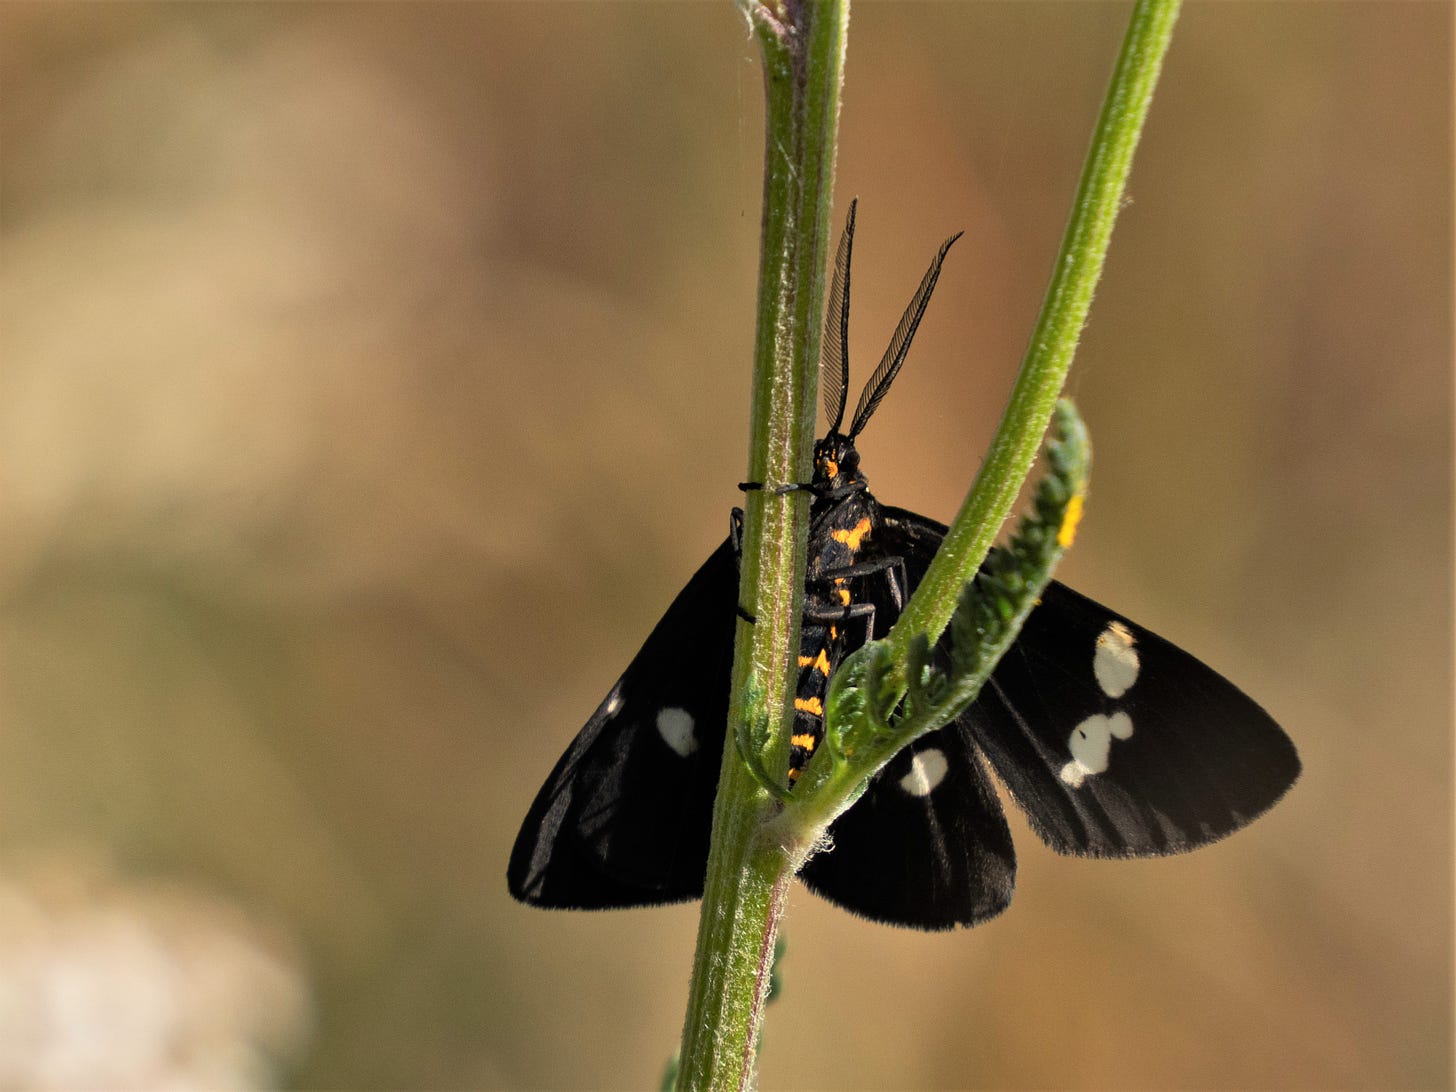 Magpie Moth (Nyctemera annulata) clutching stalk against blurred beige background